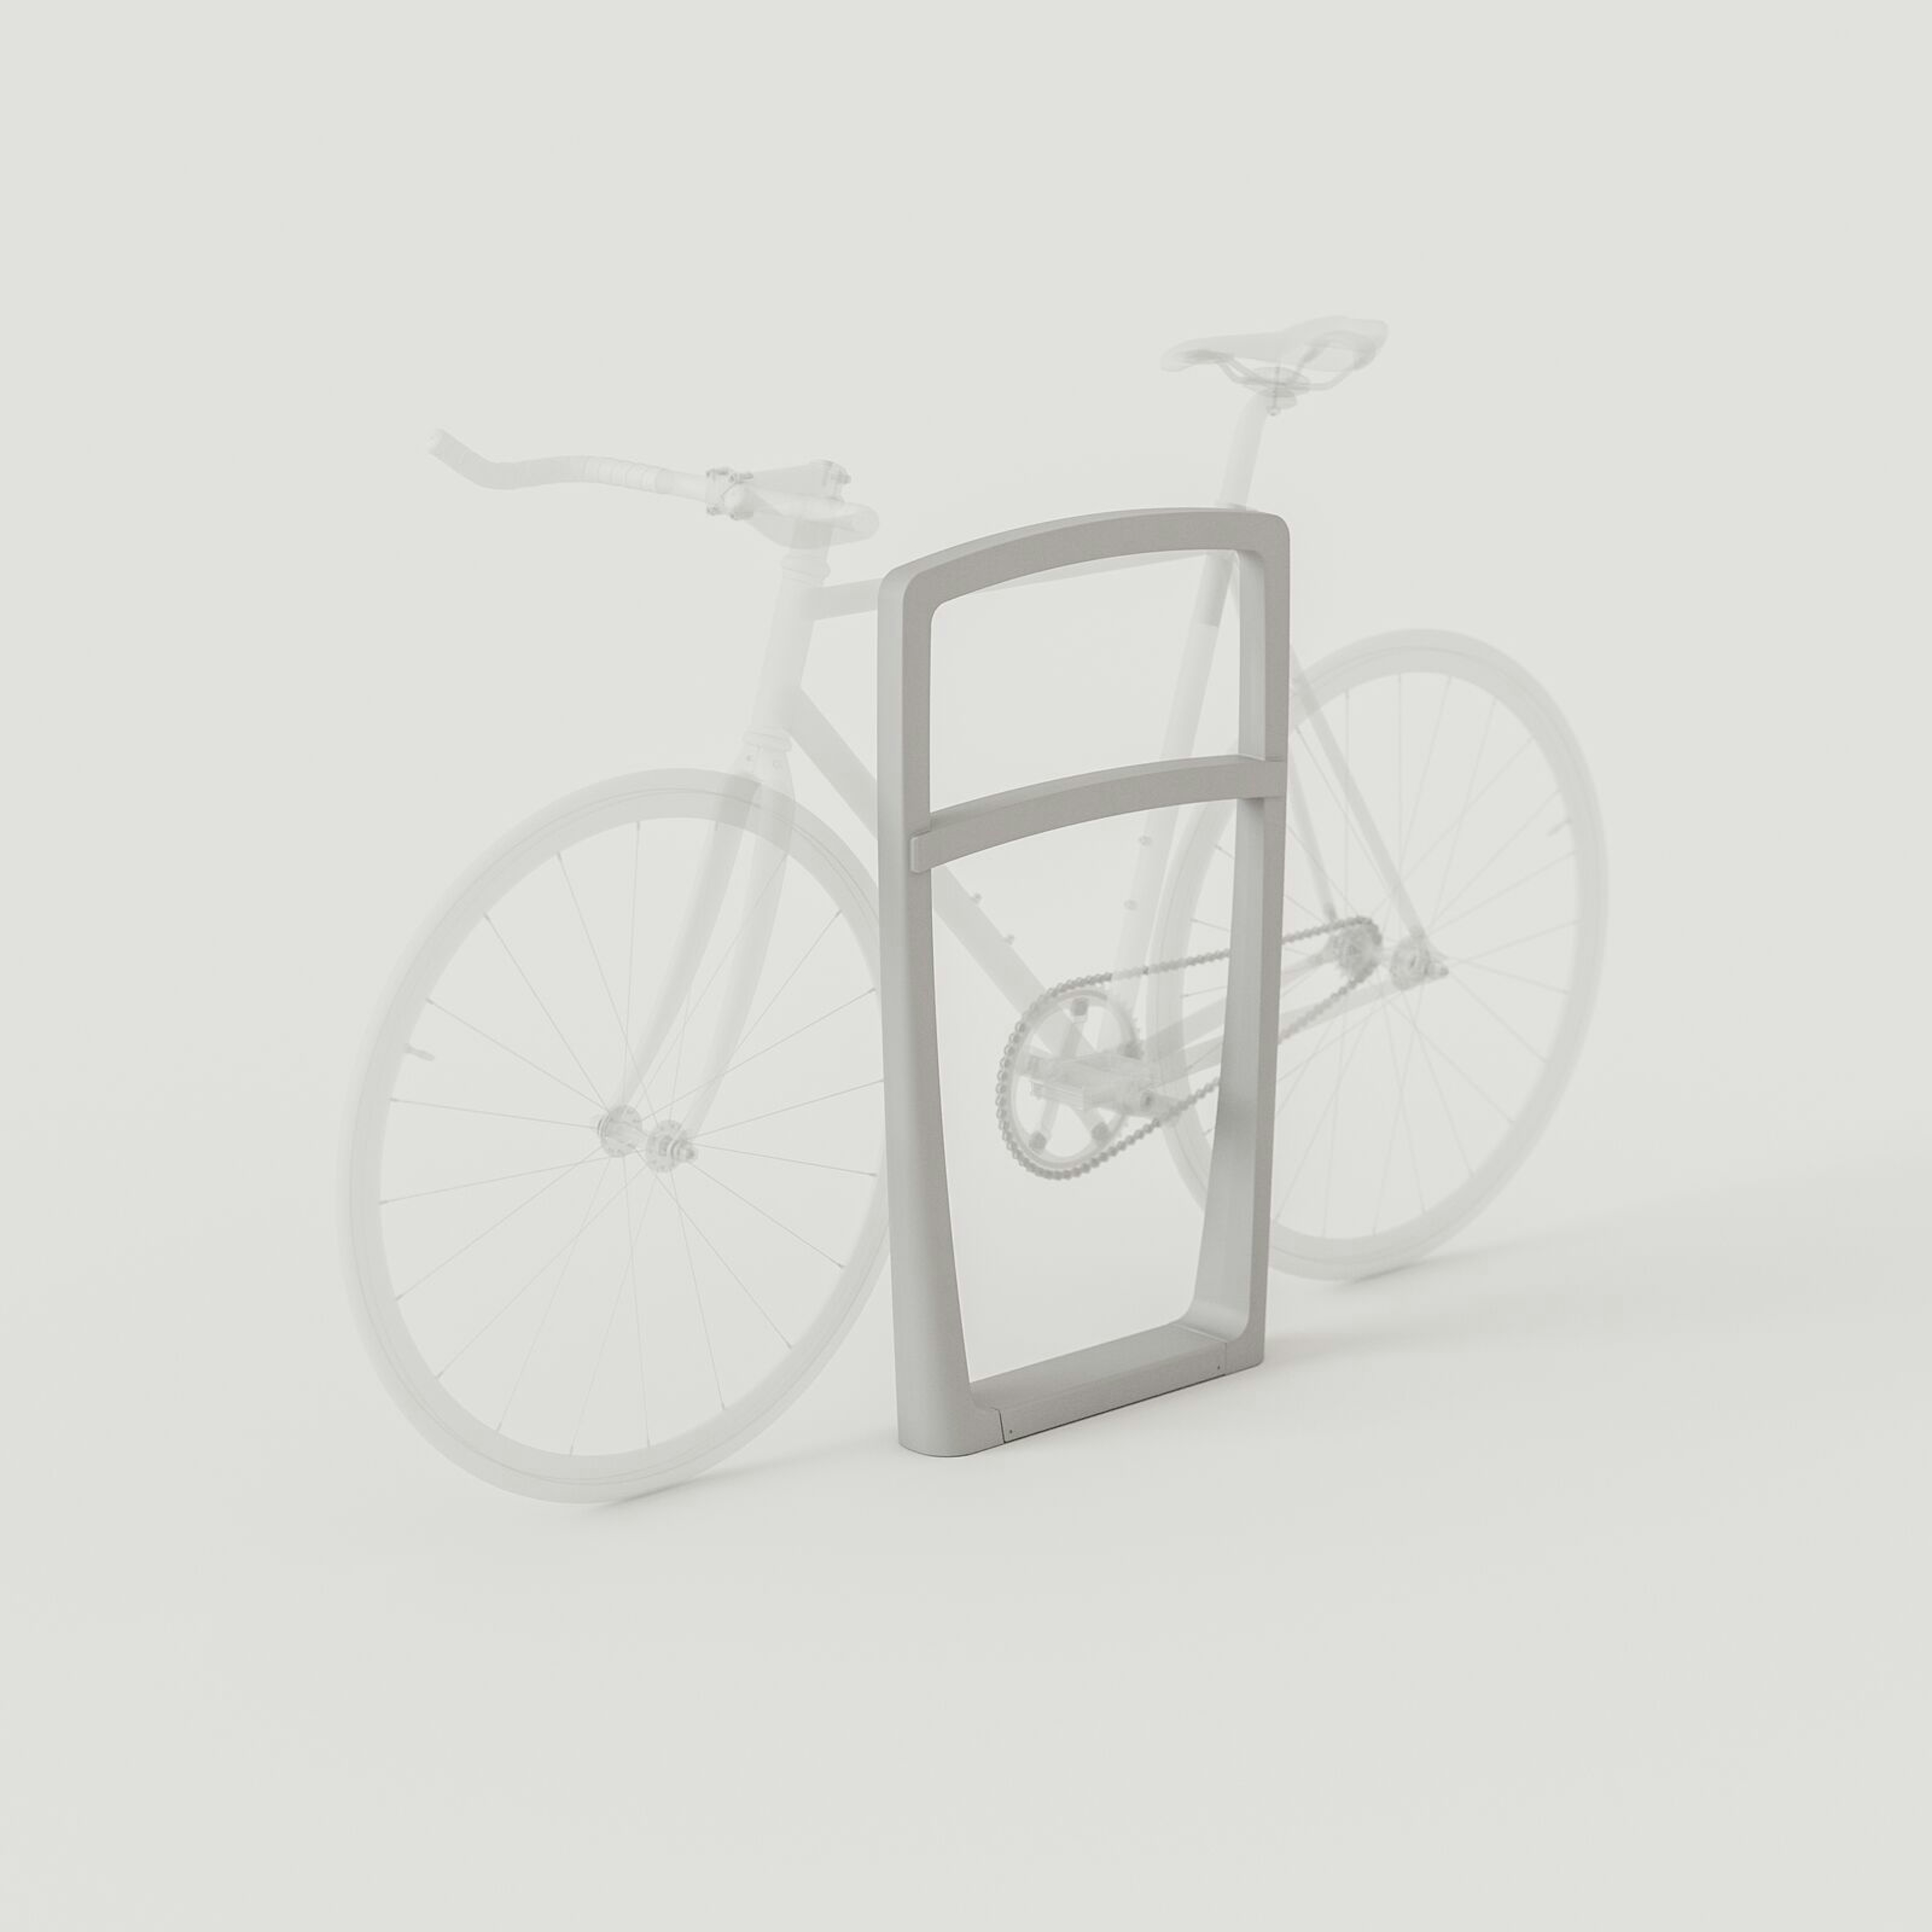 Cordia Bike Rack: Aluminum Texture